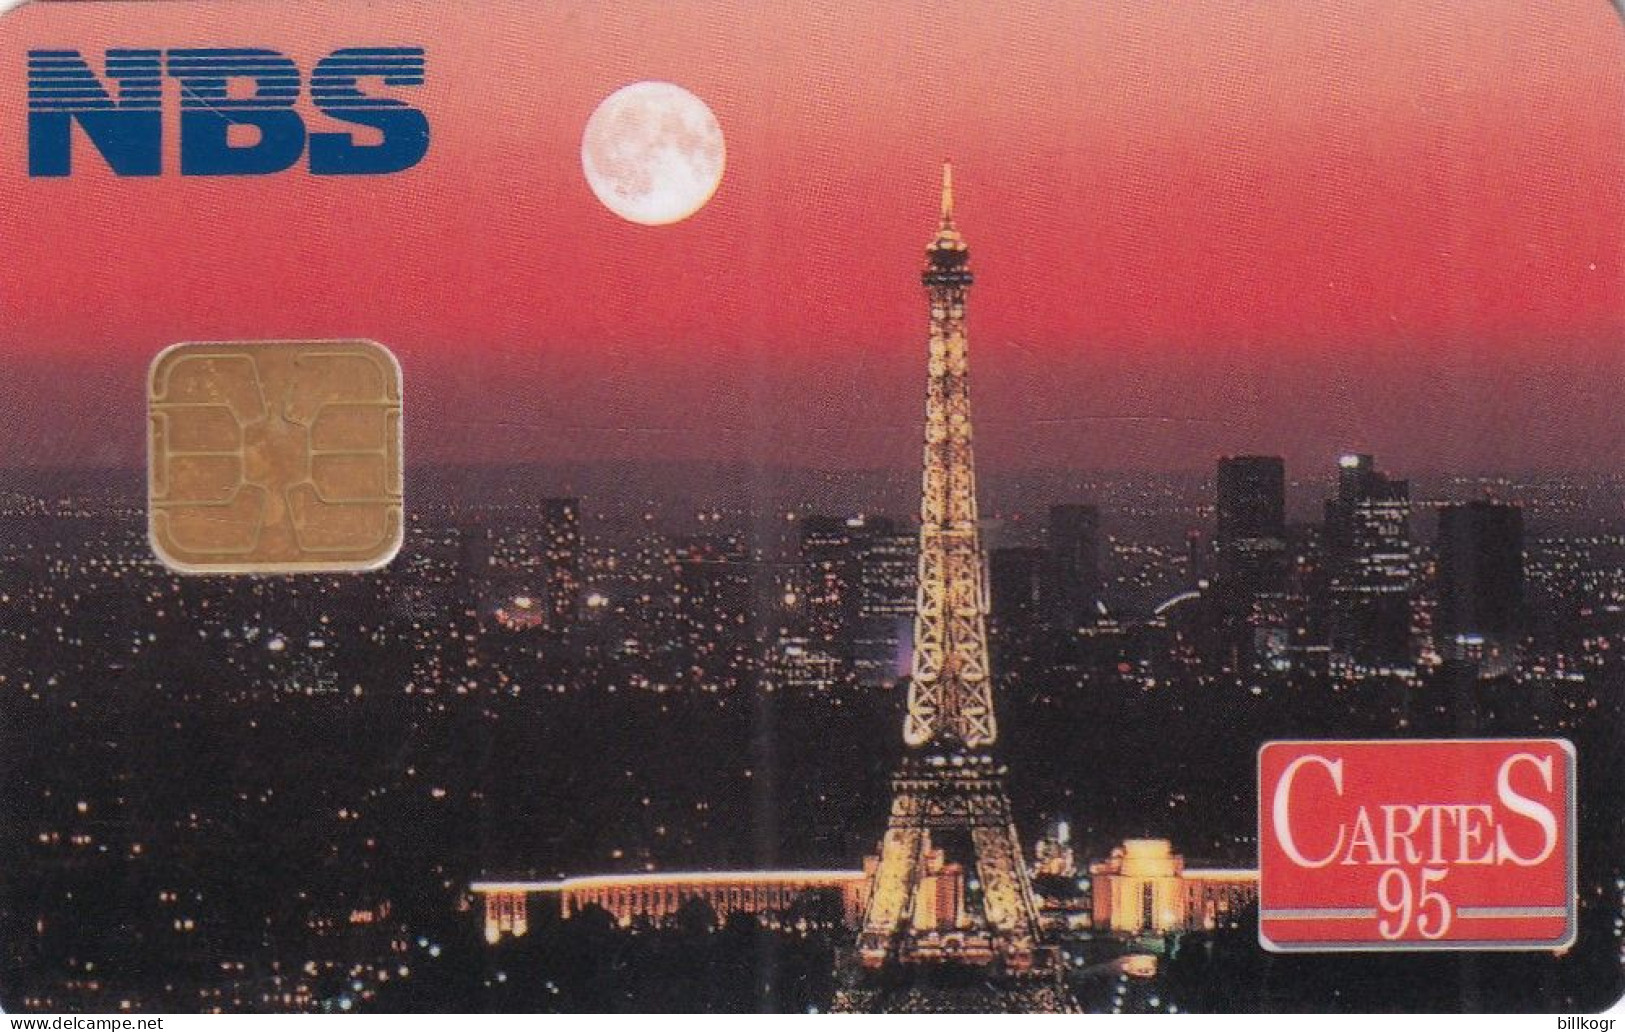 USA - Cartes 1995, NBS Demo Card - [2] Chipkarten